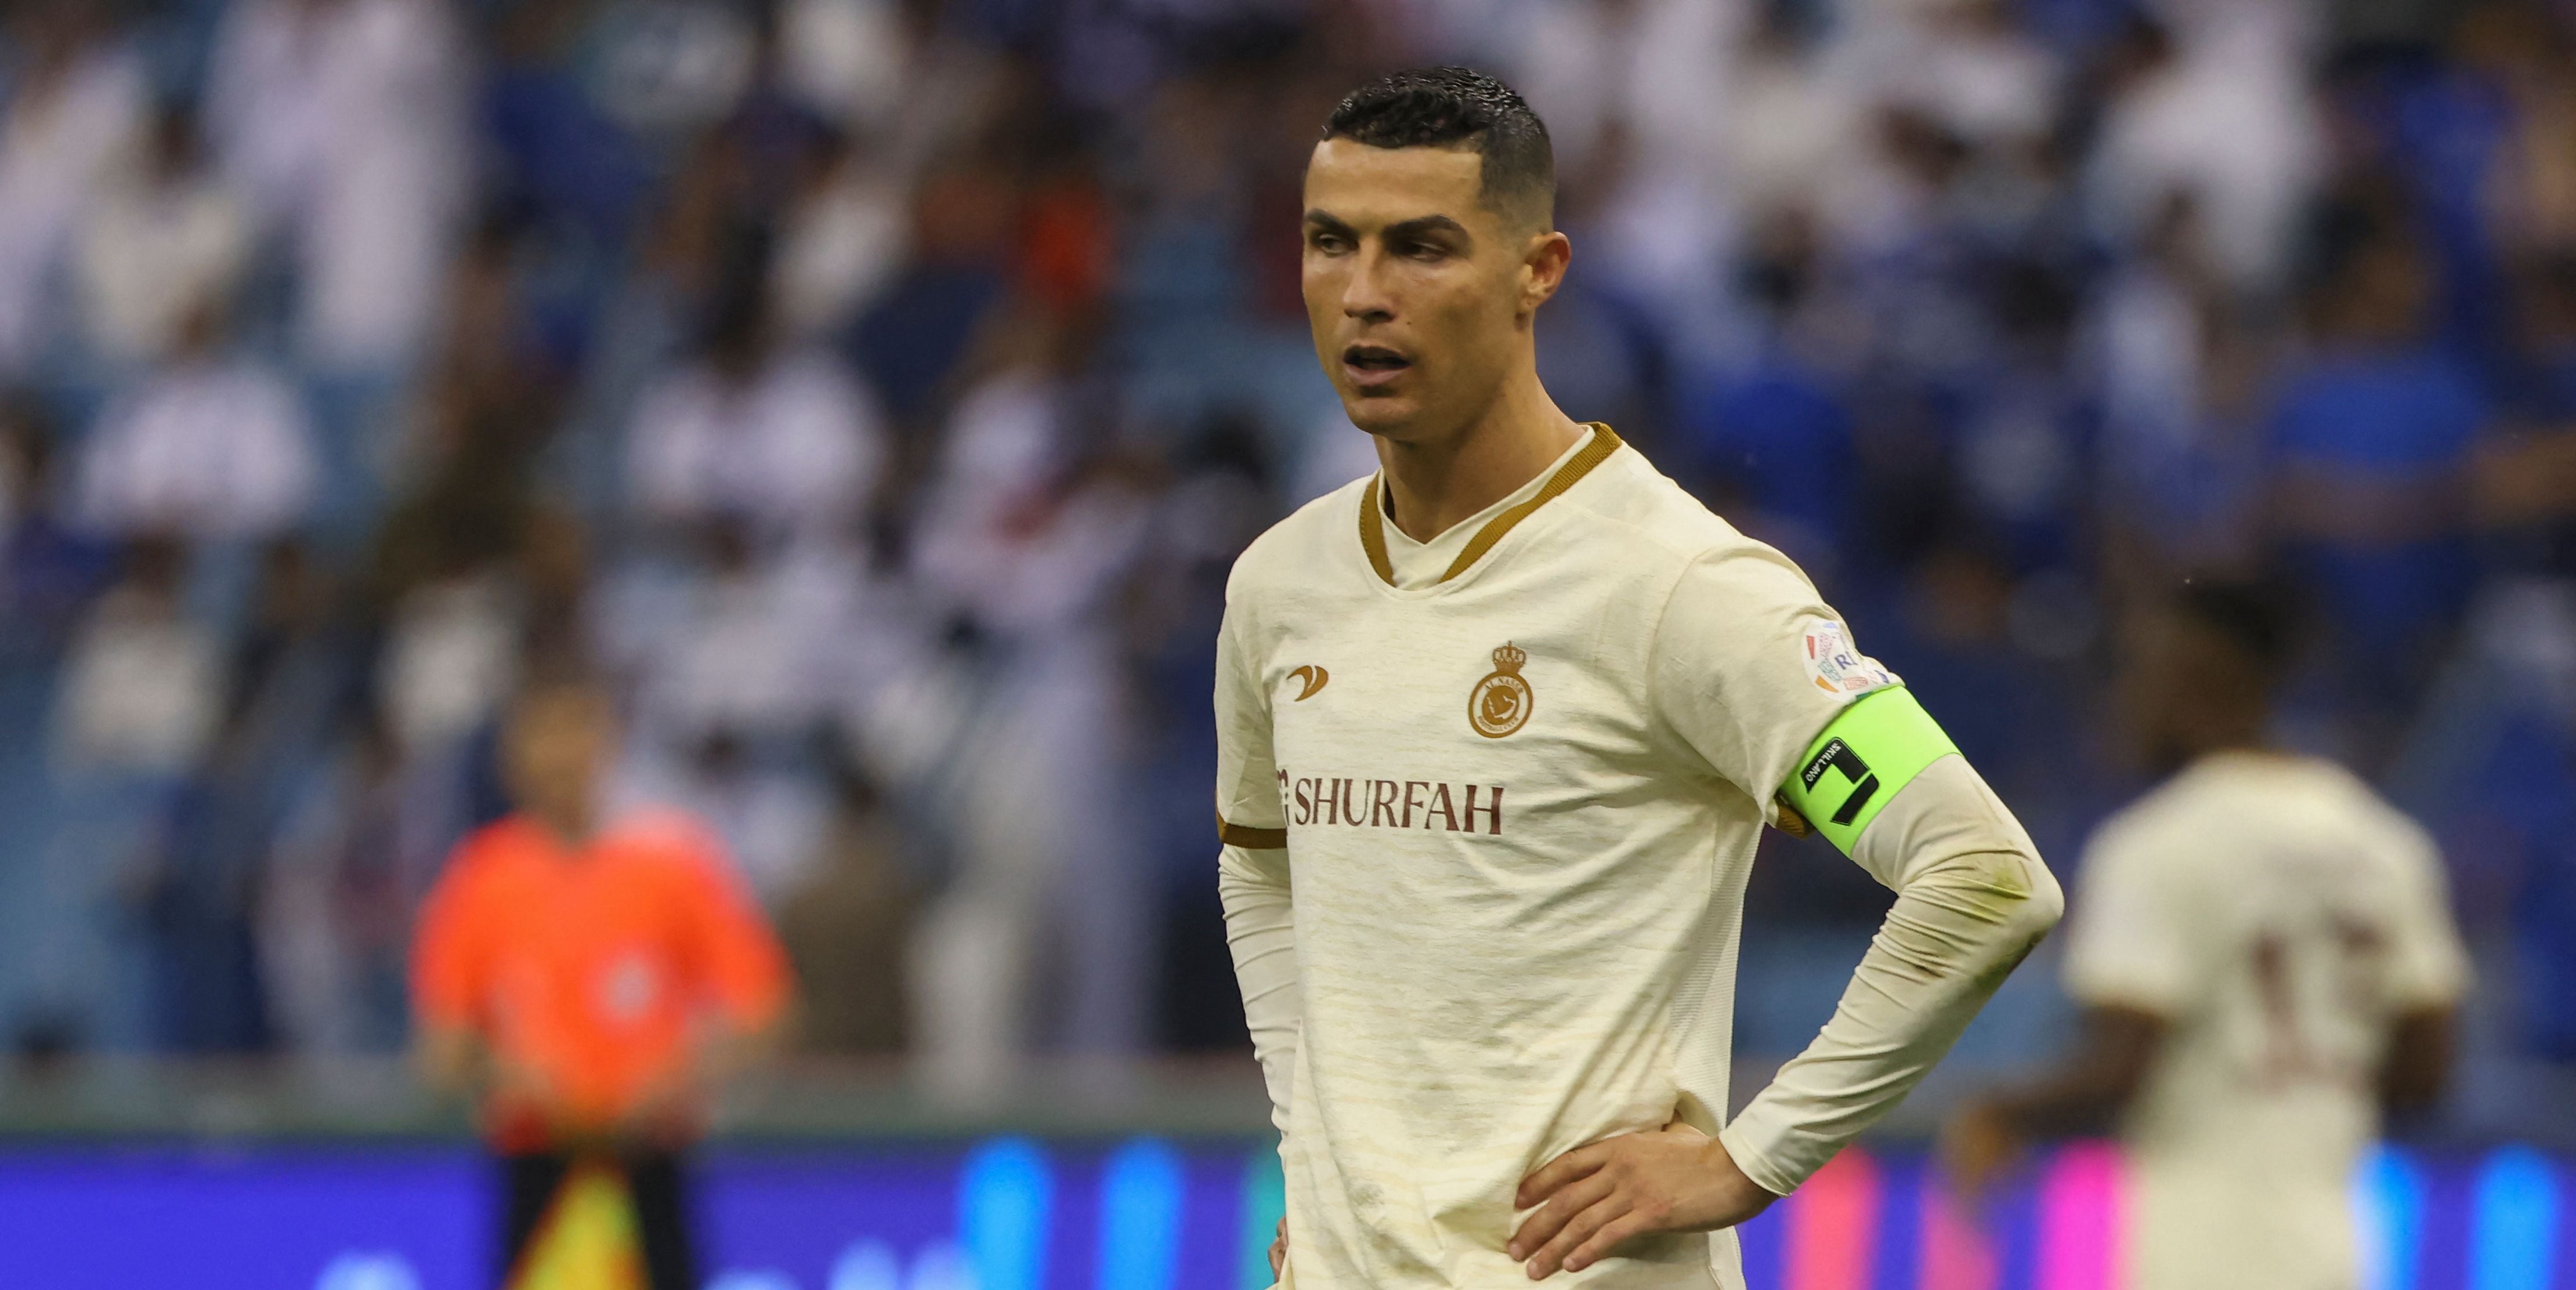 ¿La carrera Cristiano Ronaldo cayó en desgracia luego de su salida del Real Madrid?